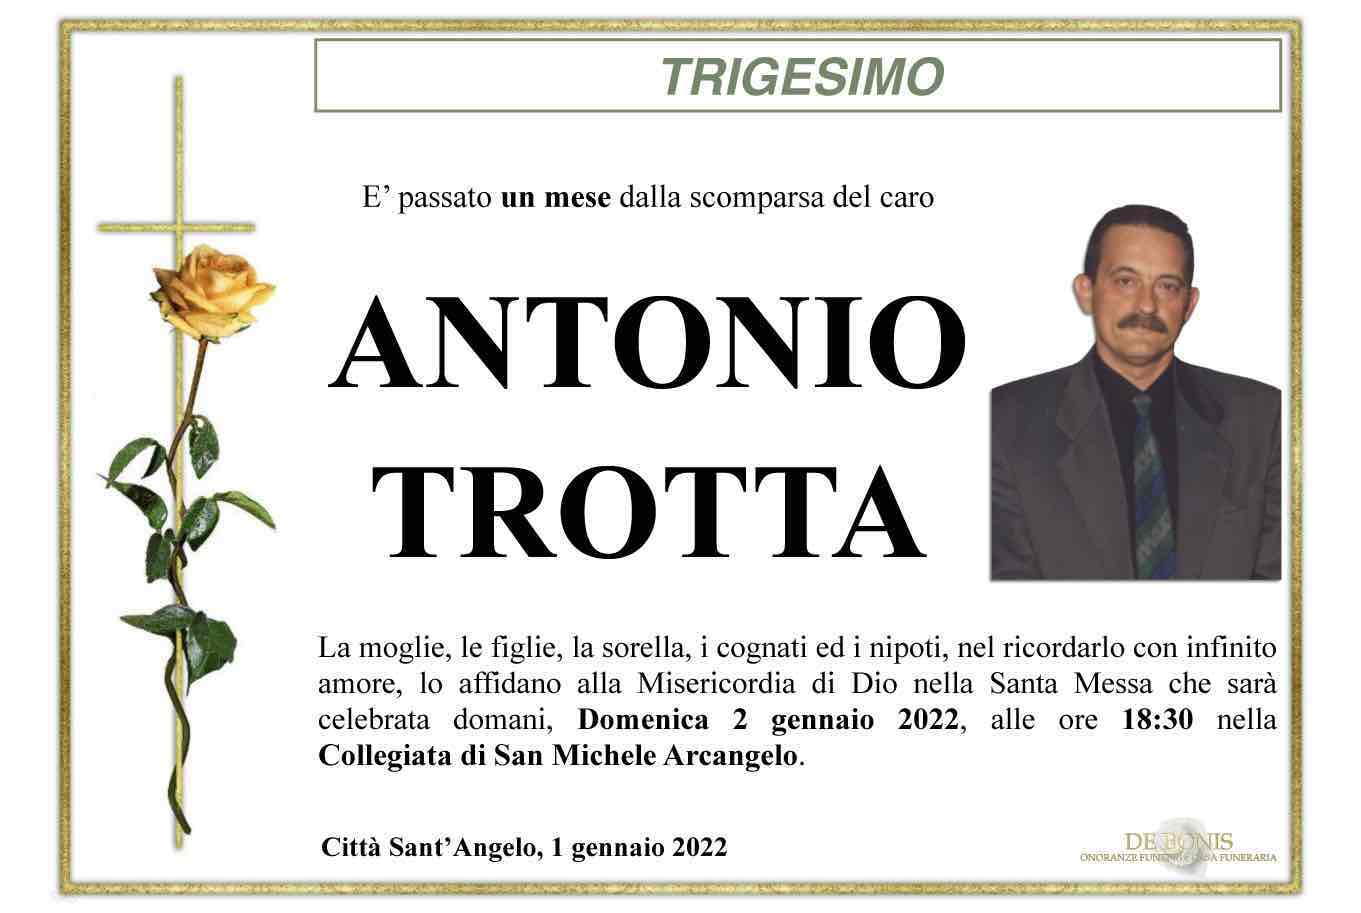 Antonio Trotta